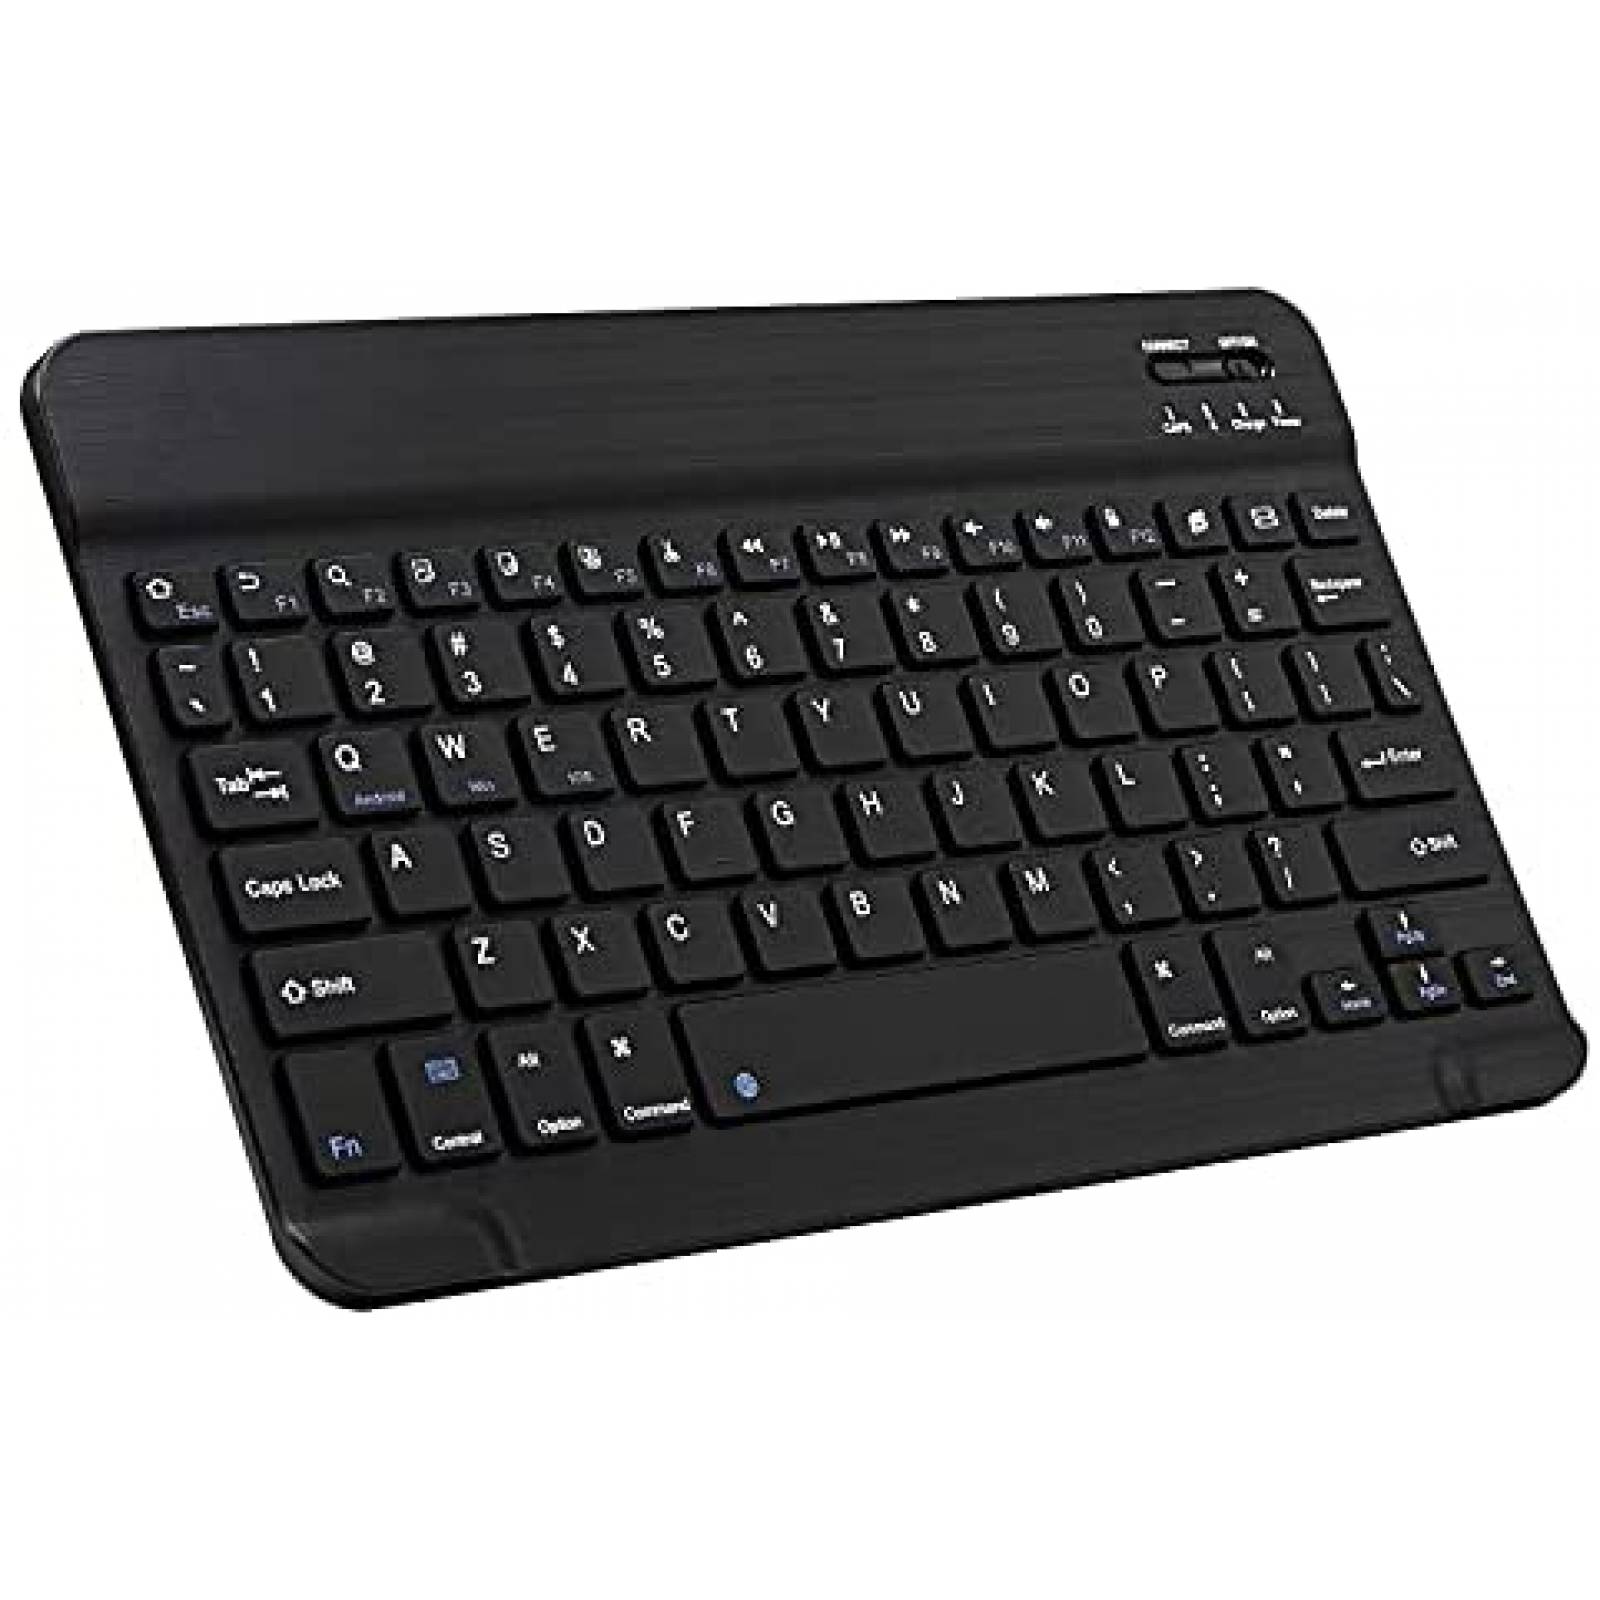 Con este mini teclado para PC o Android TV puedes escribir y usar